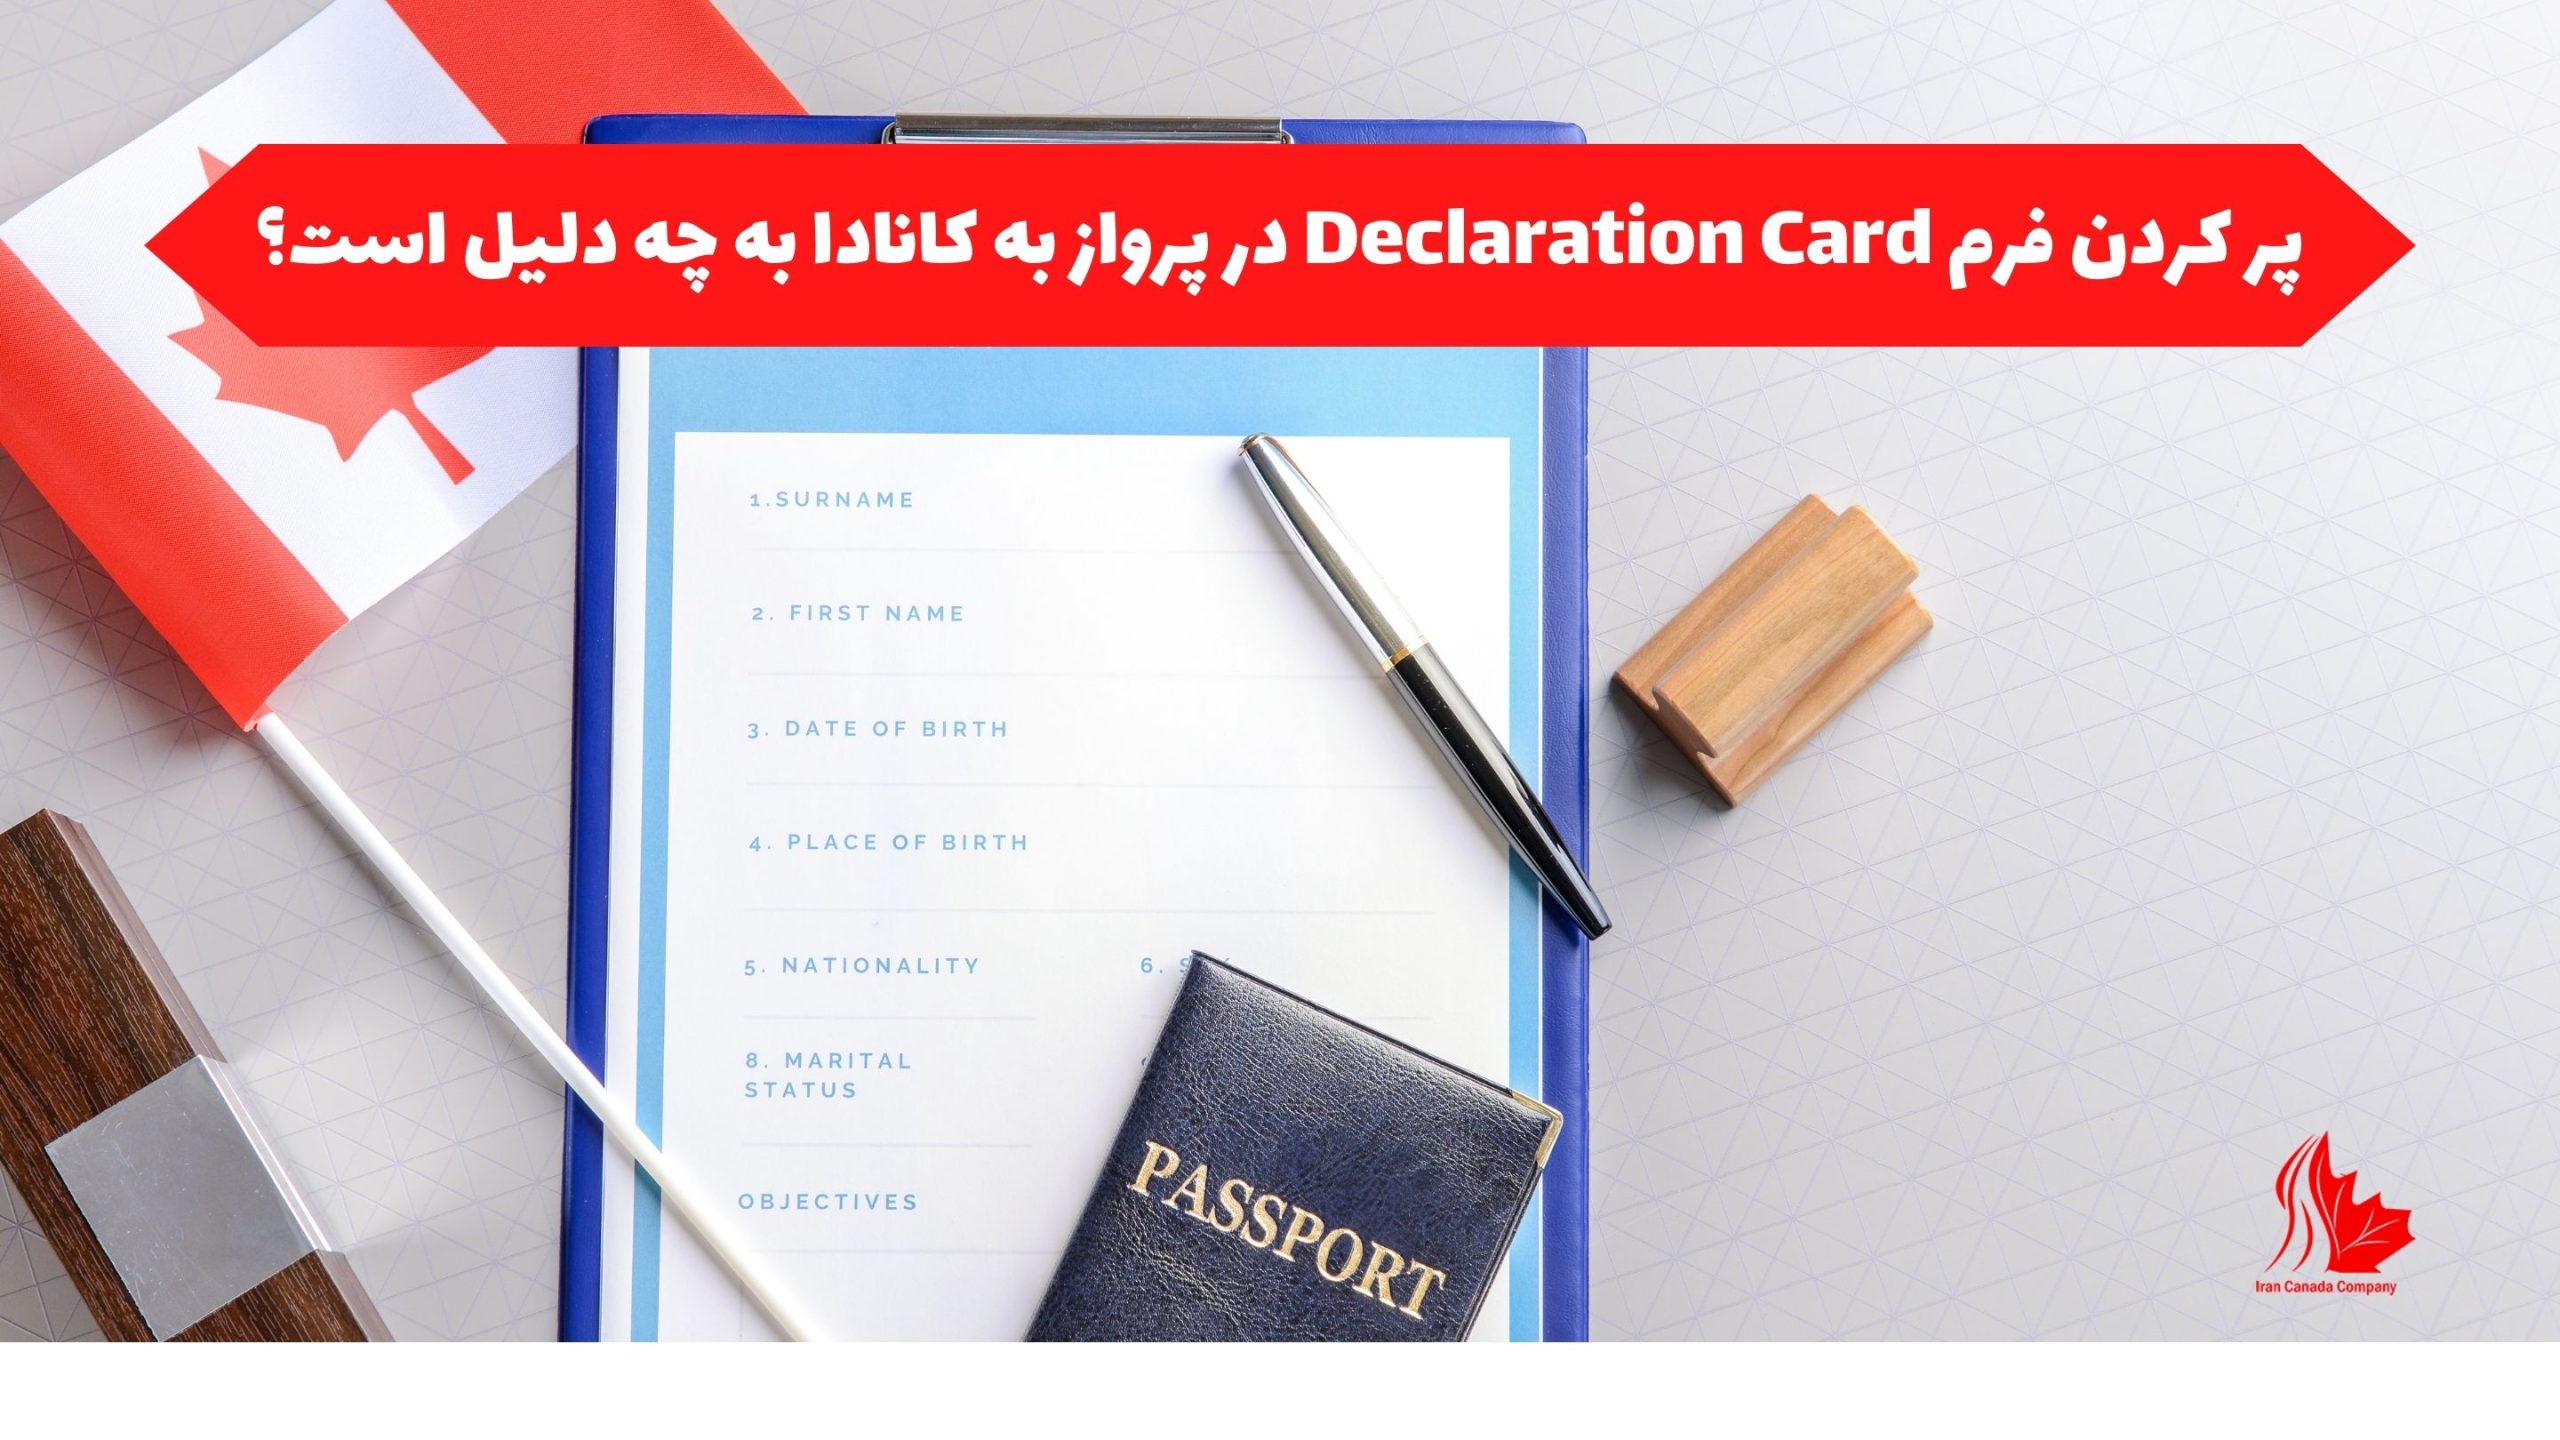 پر کردن فرم Declaration Card در پرواز به کانادا به چه دلیل است؟